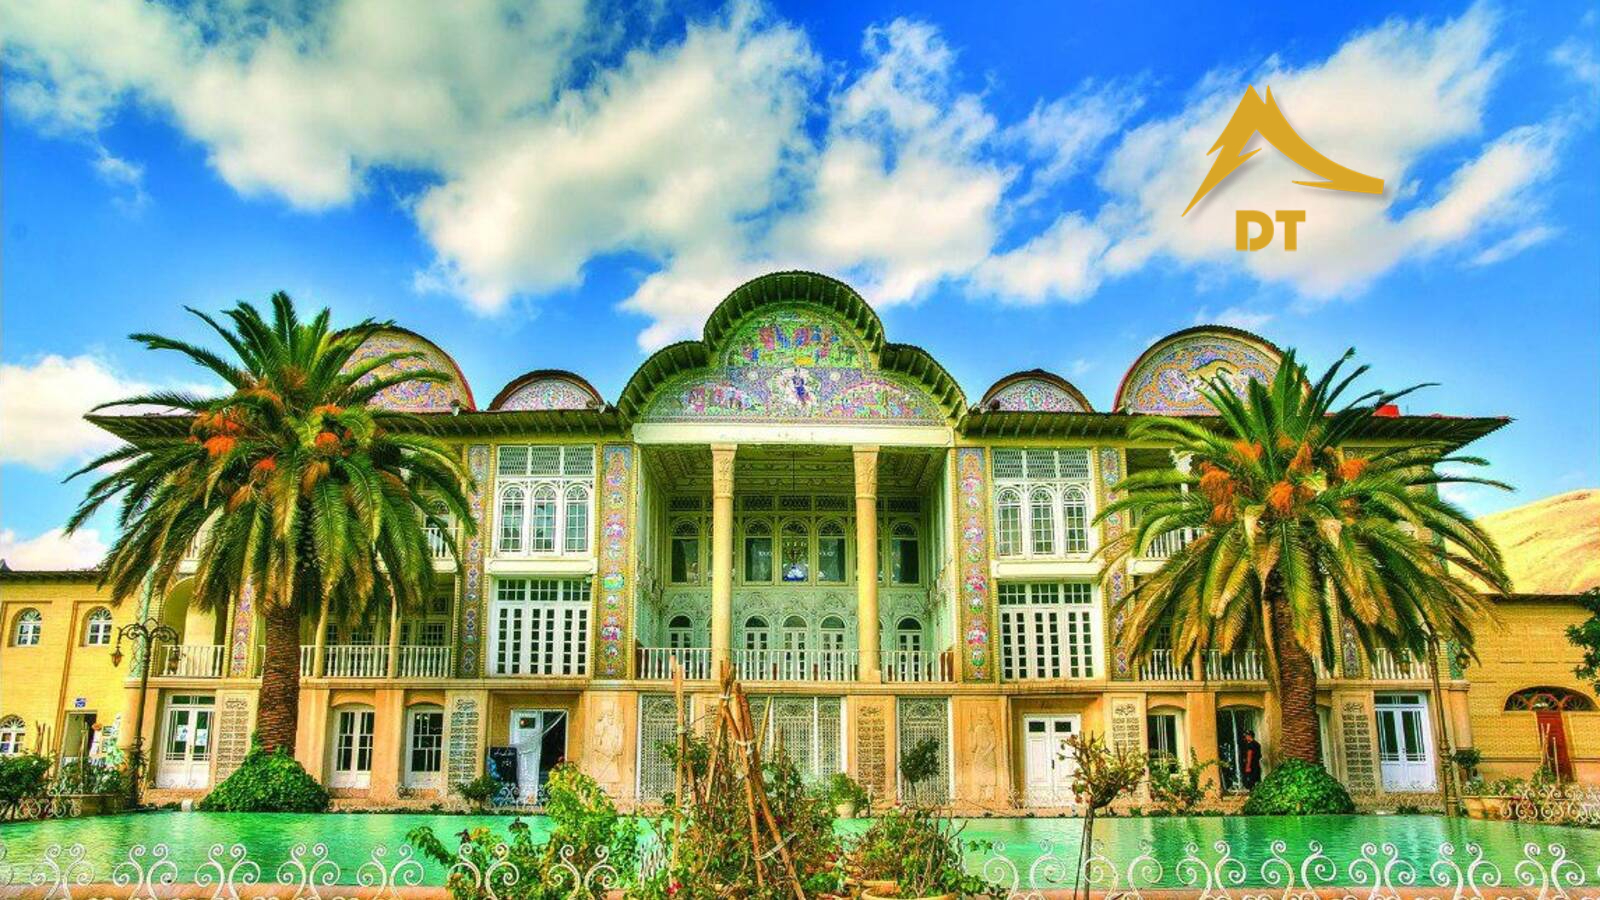 ساخت مشارکتی در شیراز | شرکت معماری و دکوراسیون دکوطرح 09122460089